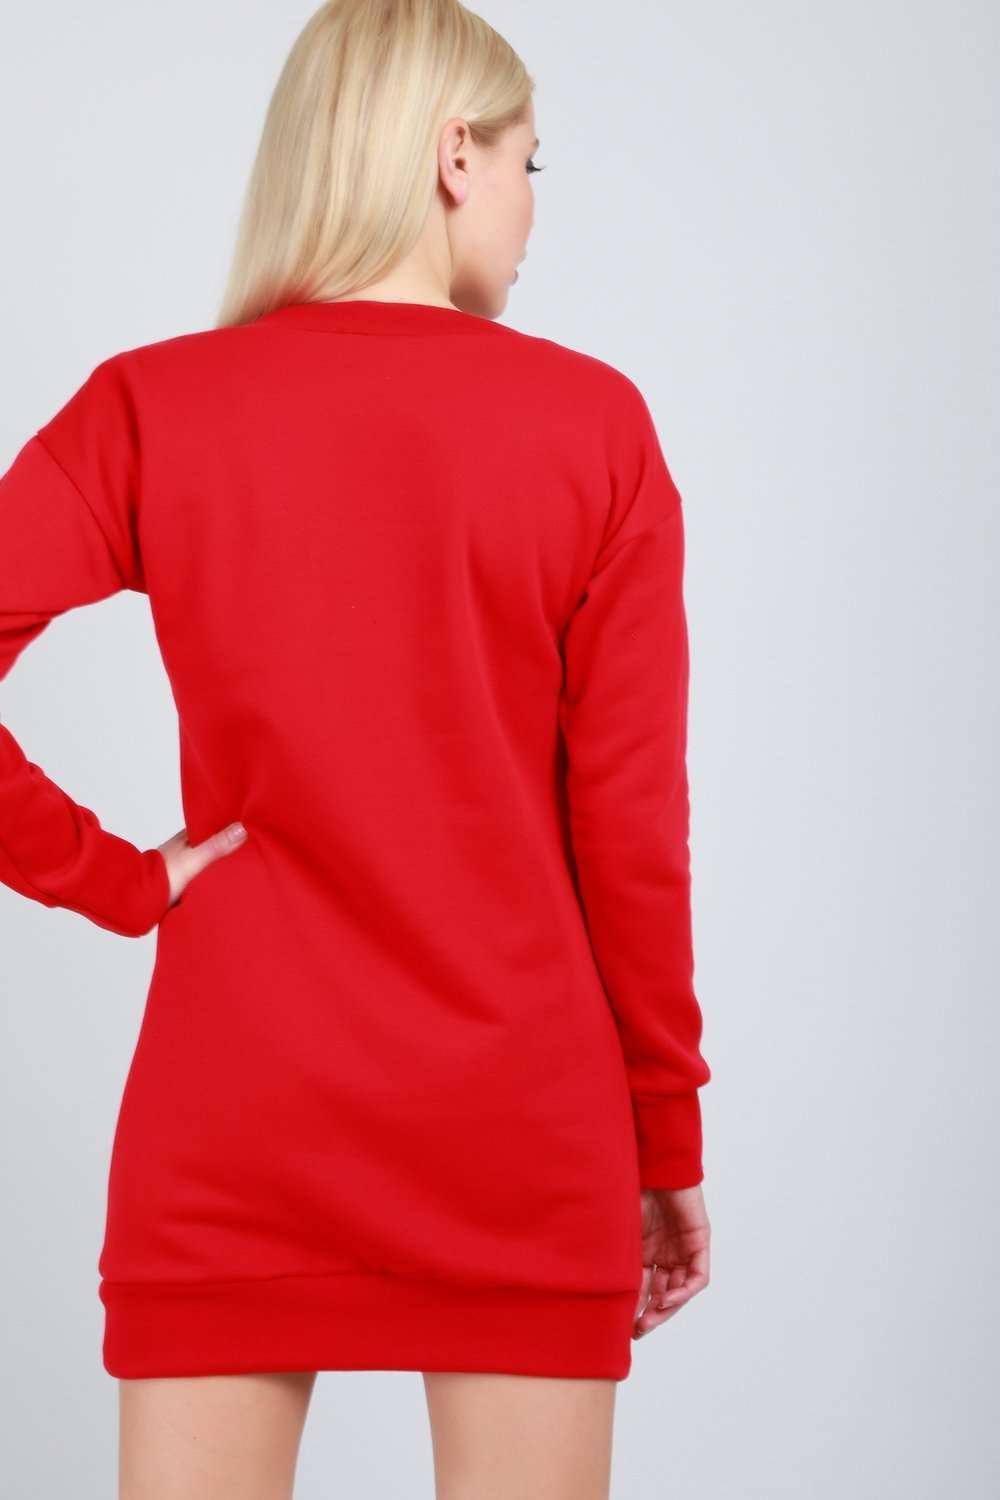 Long Sleeve Red Floral Skull Print Jumper Dress - bejealous-com